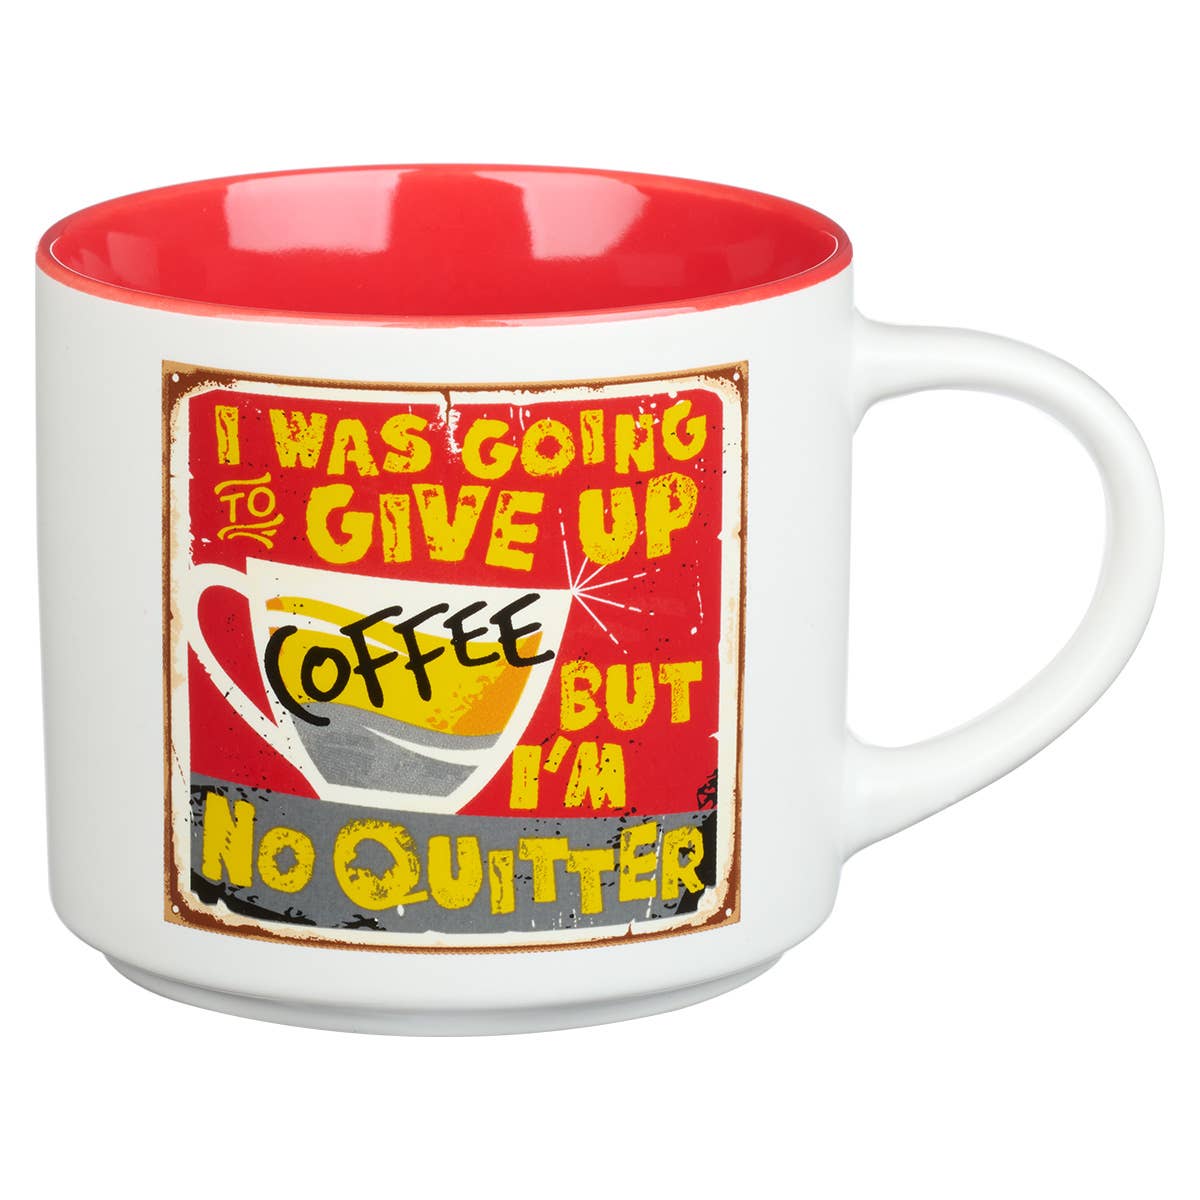 Give Up Coffee Ceramic Coffee Mug